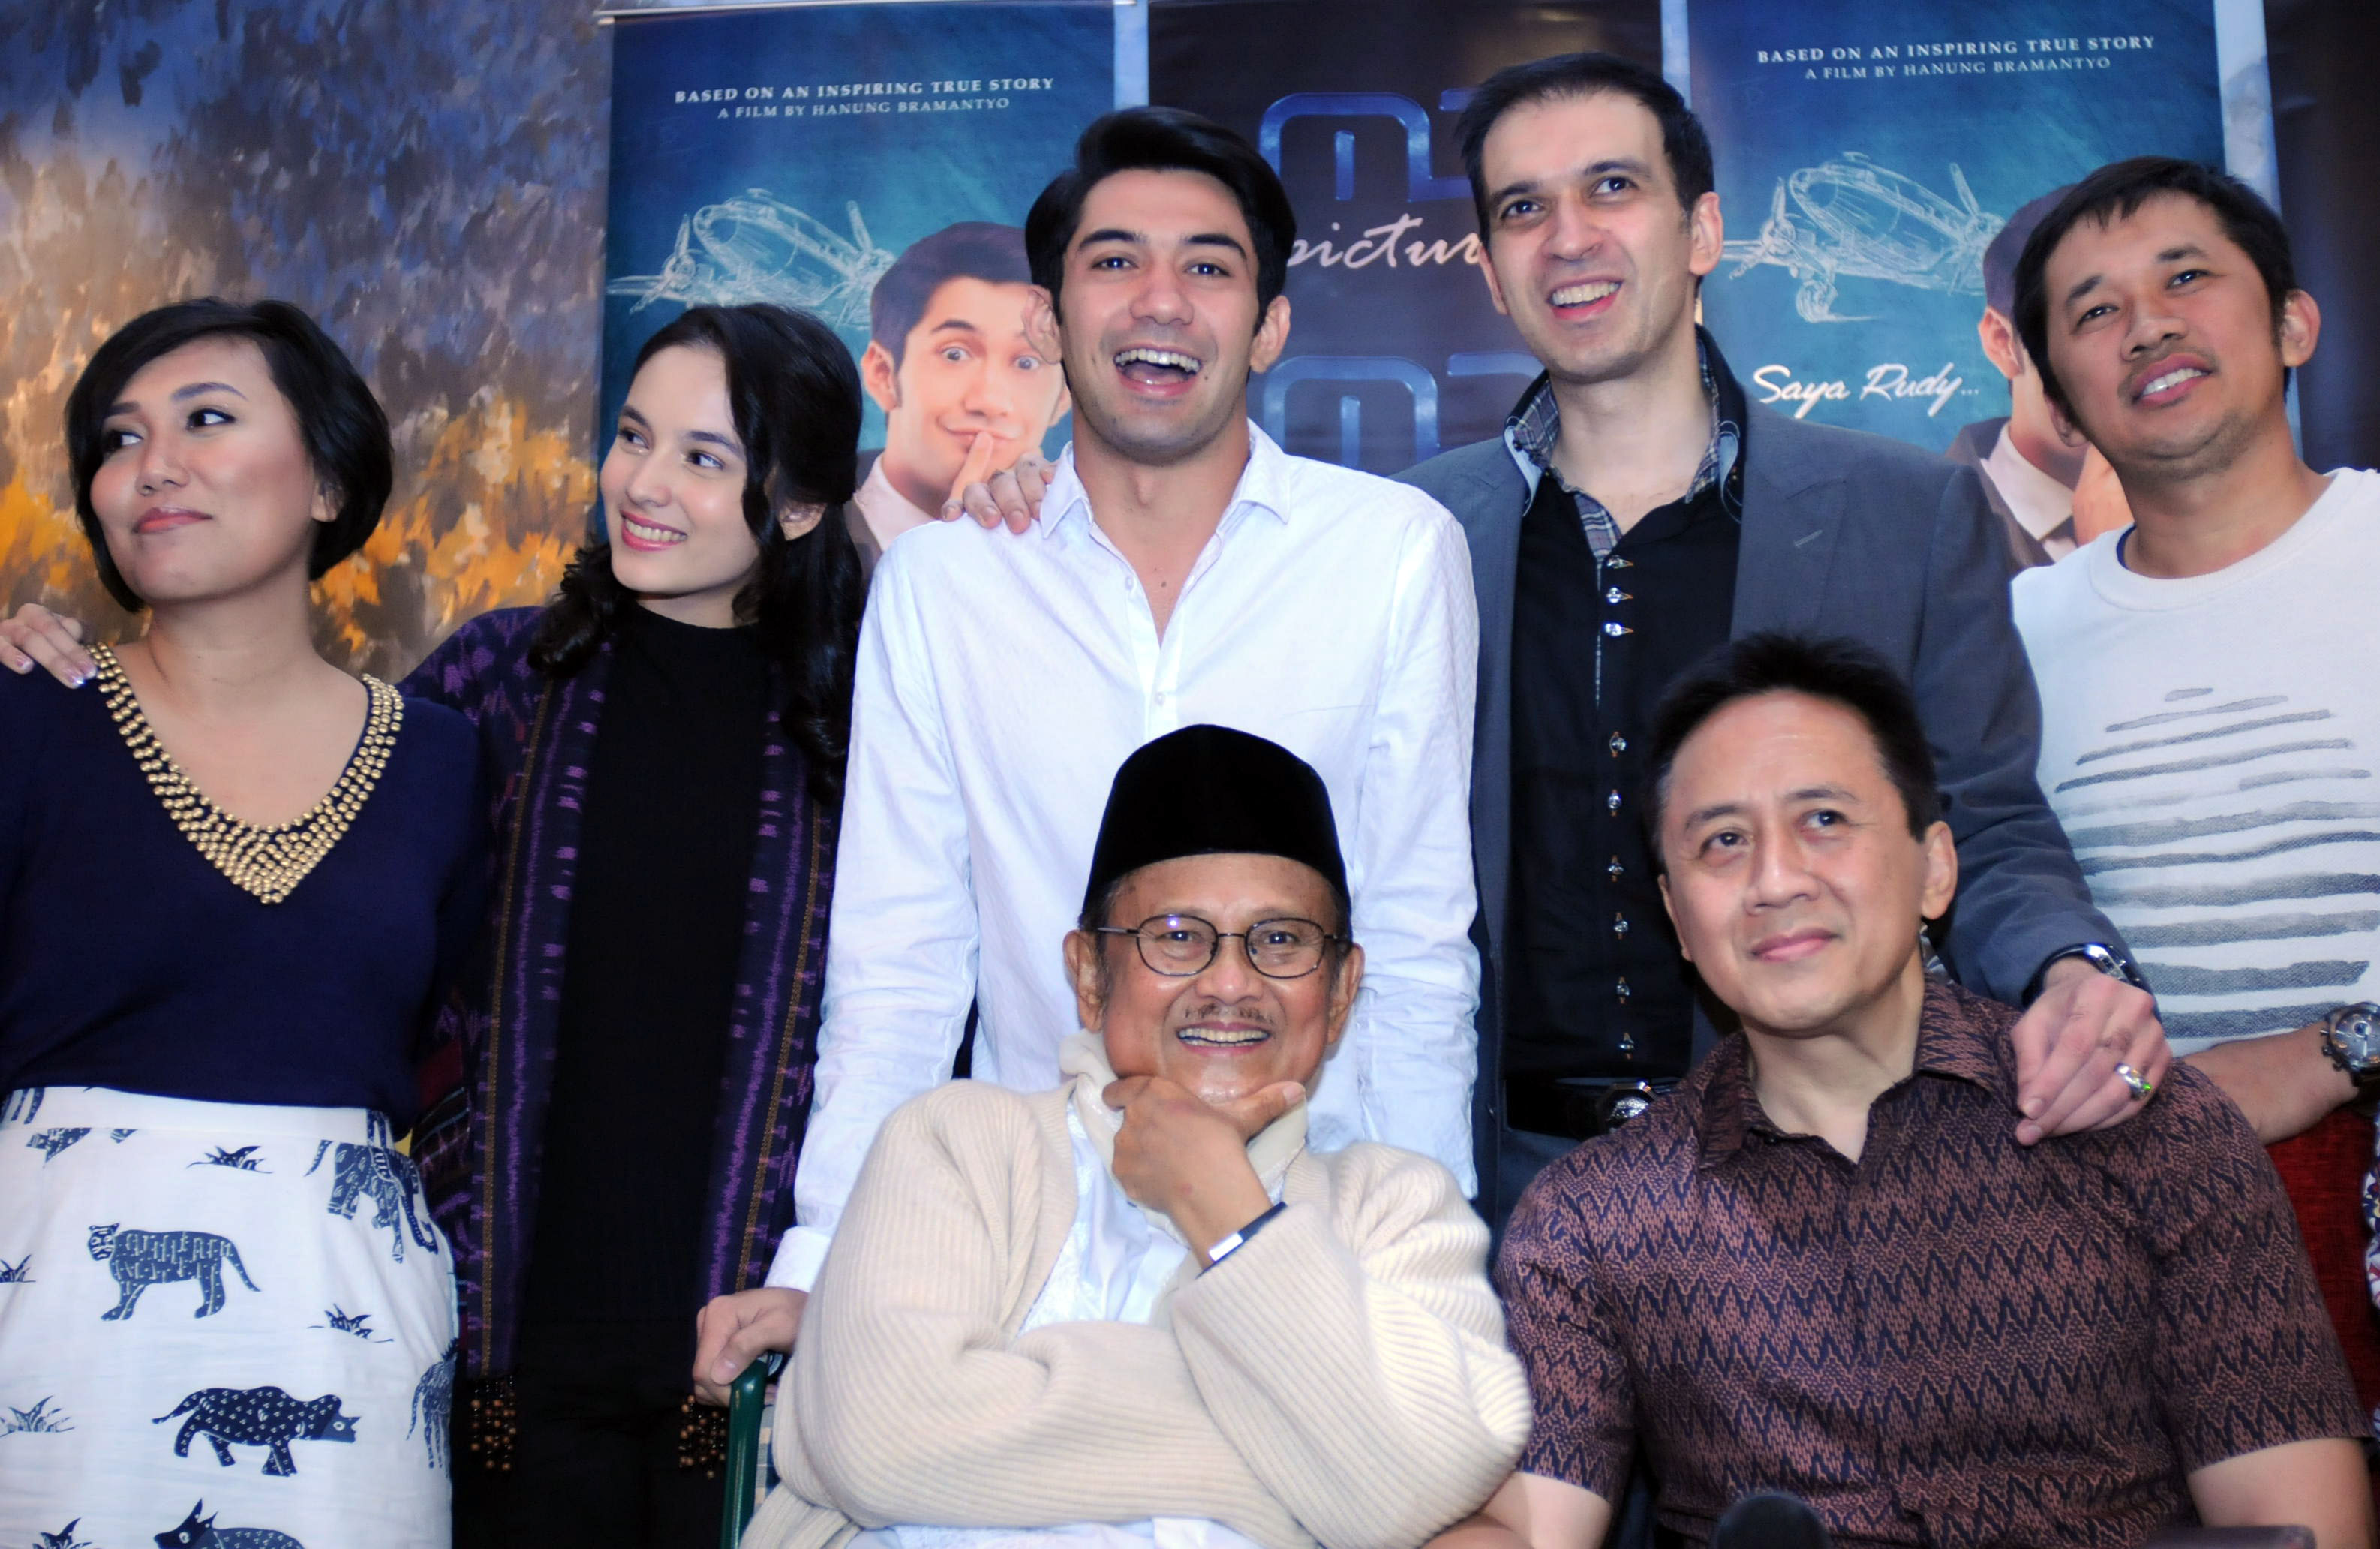 Mantan presiden BJ Habibie (kiri depan) bersama staf dan kru film ‘Rudy Habibie’ saat konferensi pers di Jakarta, pada 5 Februari 2016. Foto oleh Teresia May/Antara 